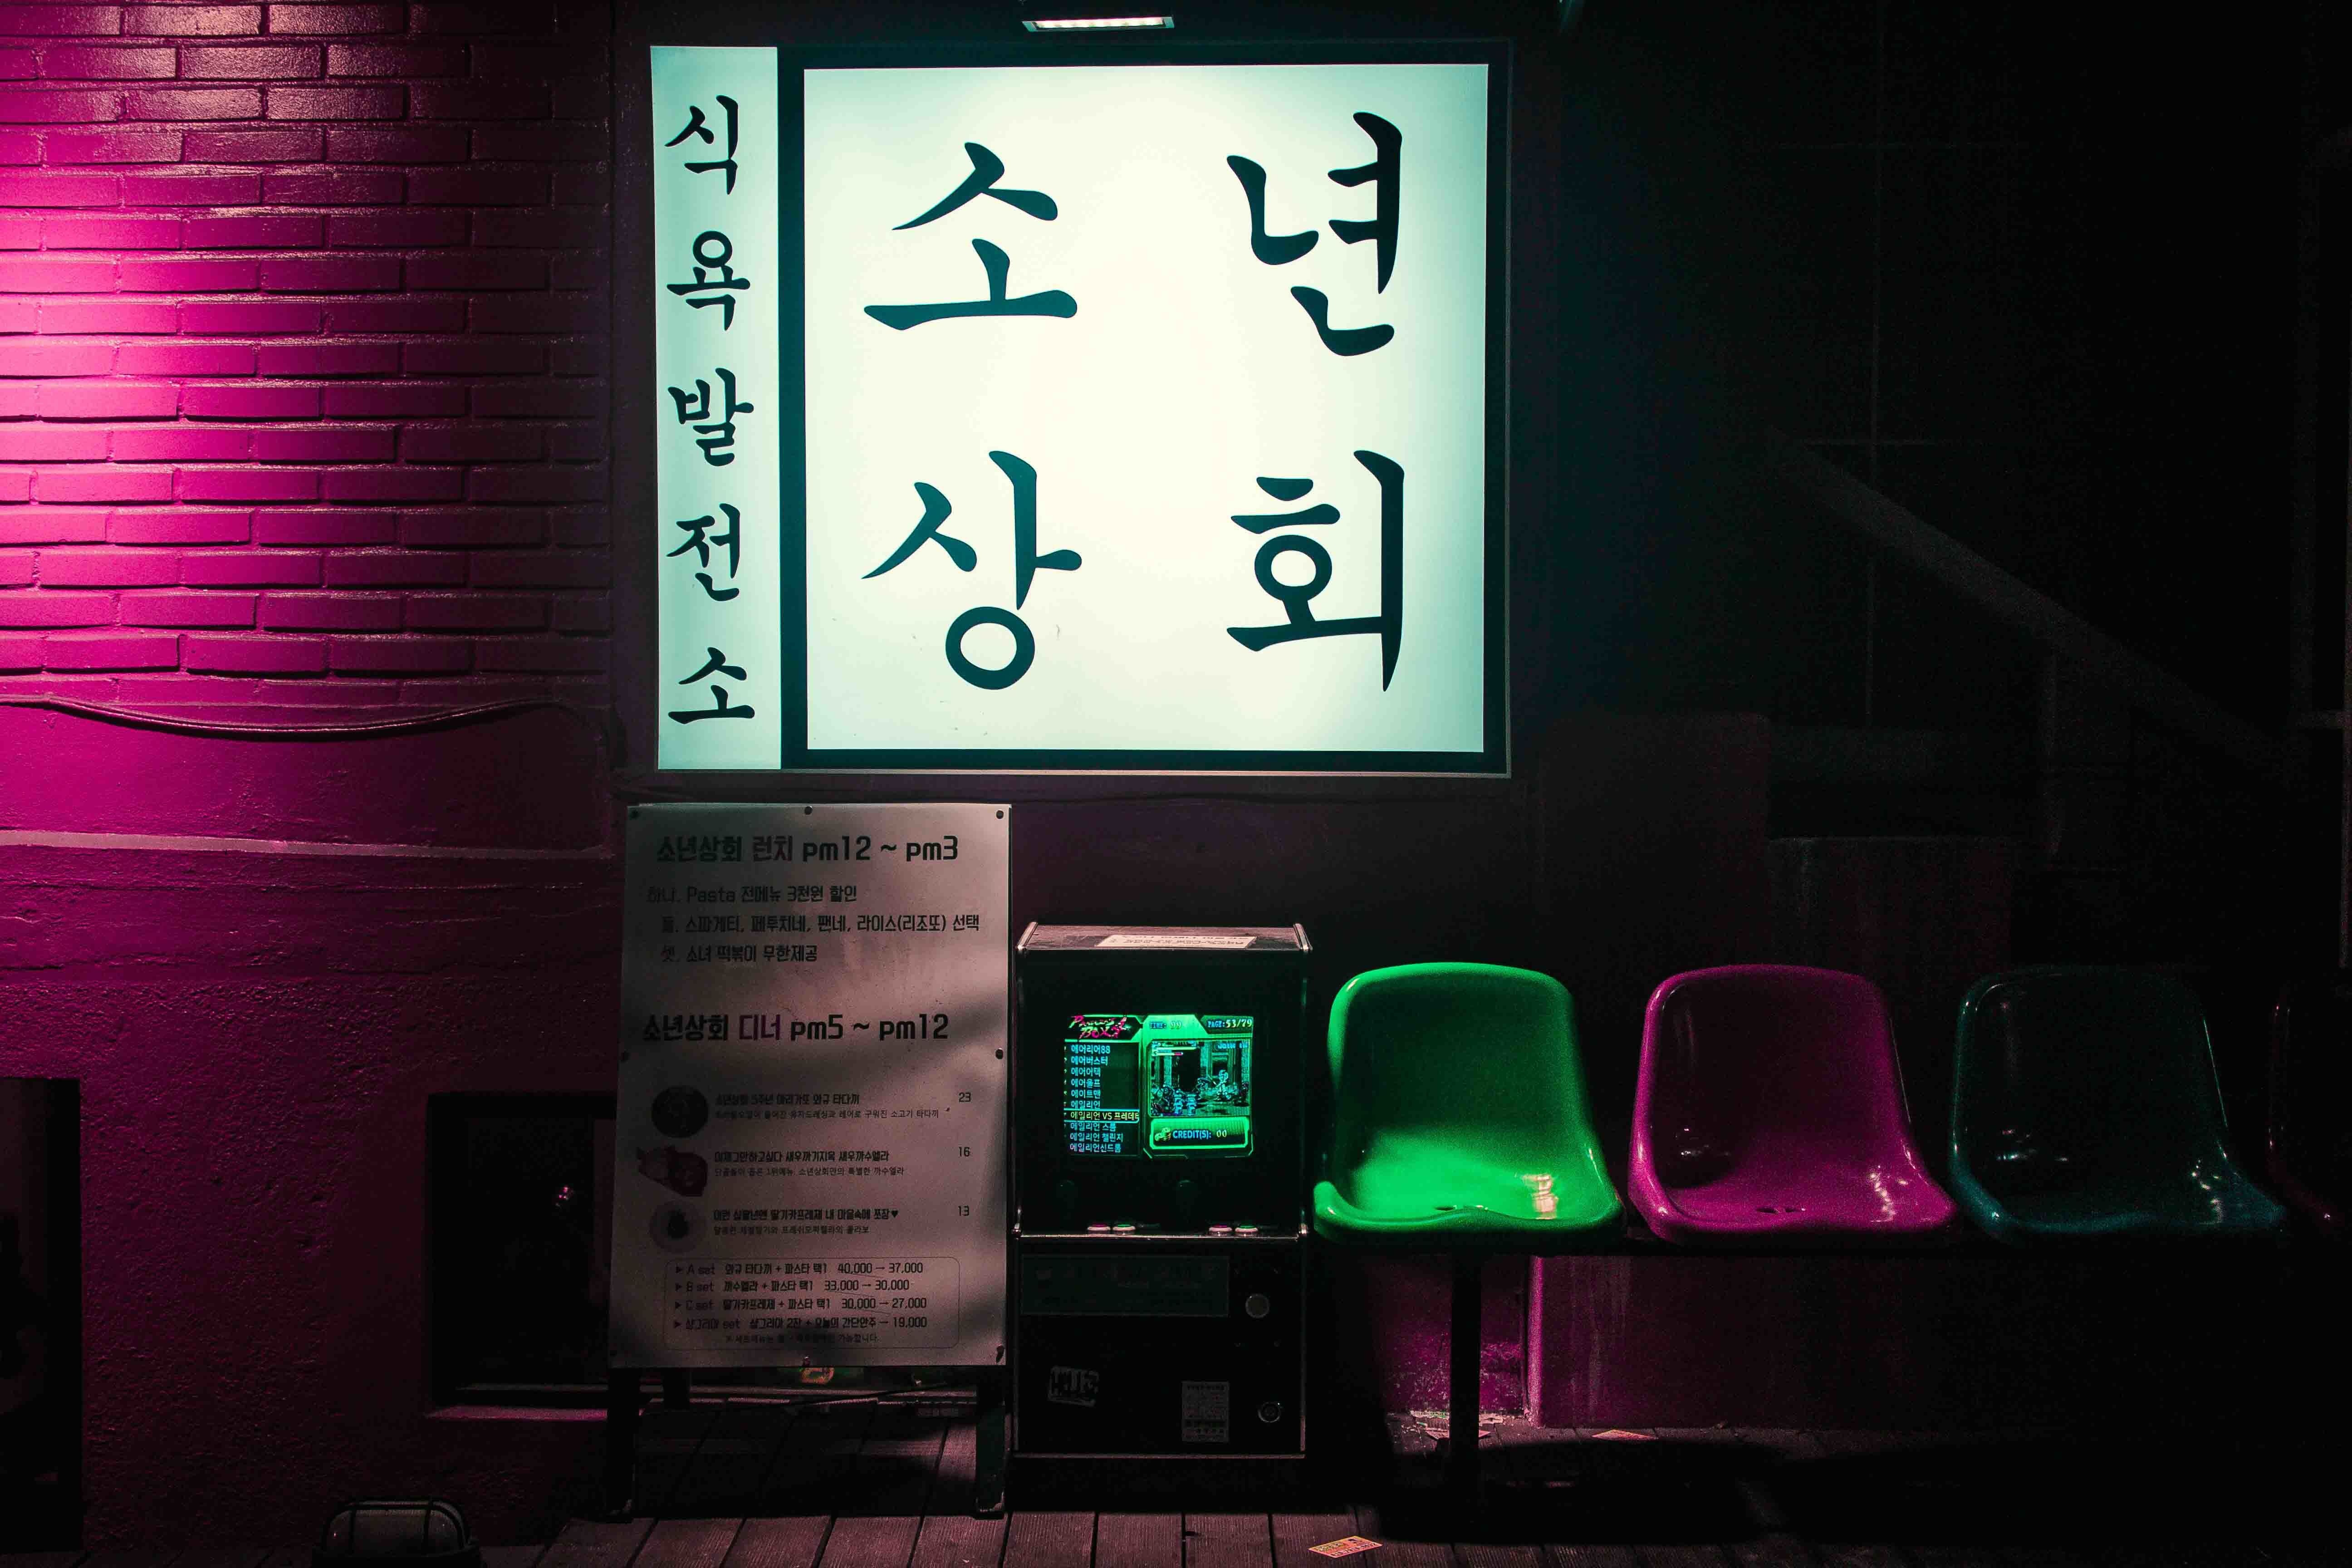 Penulisan bahasa Korea berdasarkan alfabet gak cuma tulisan gambar